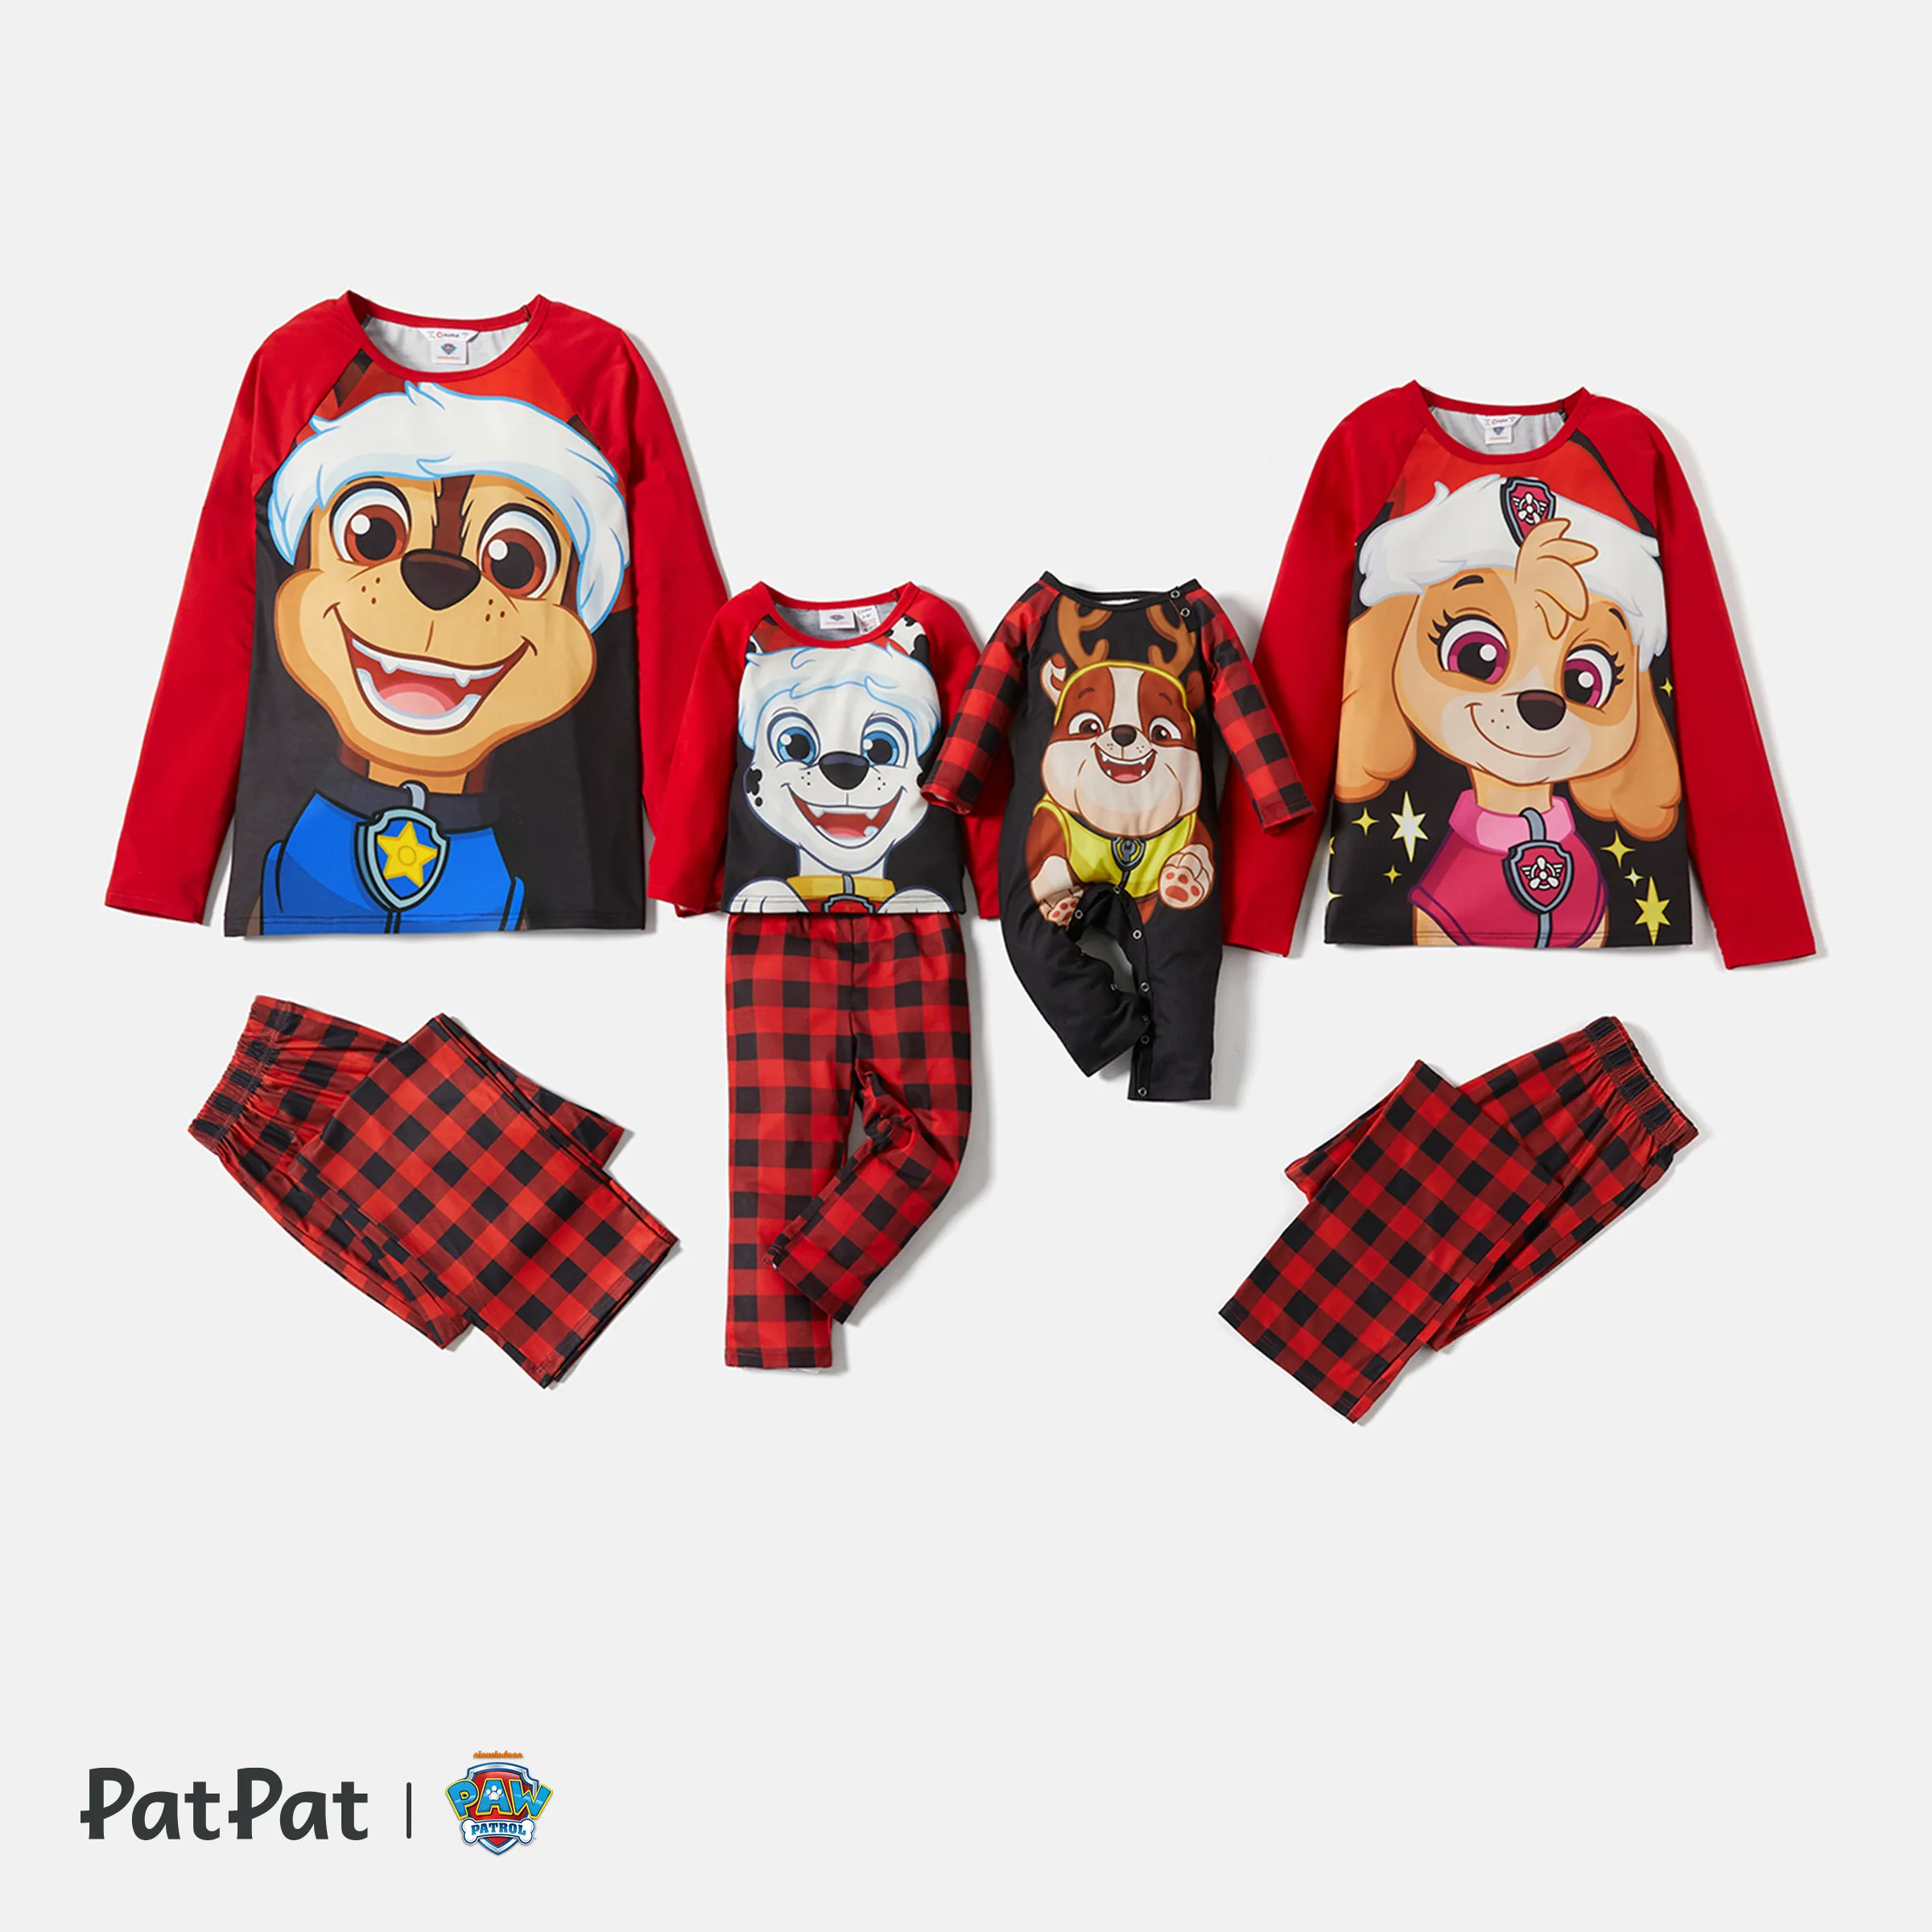 PAW Patrol Christmas Big Graphic Top And Plaid Pants Pajamas Sets(Flame Resistant)